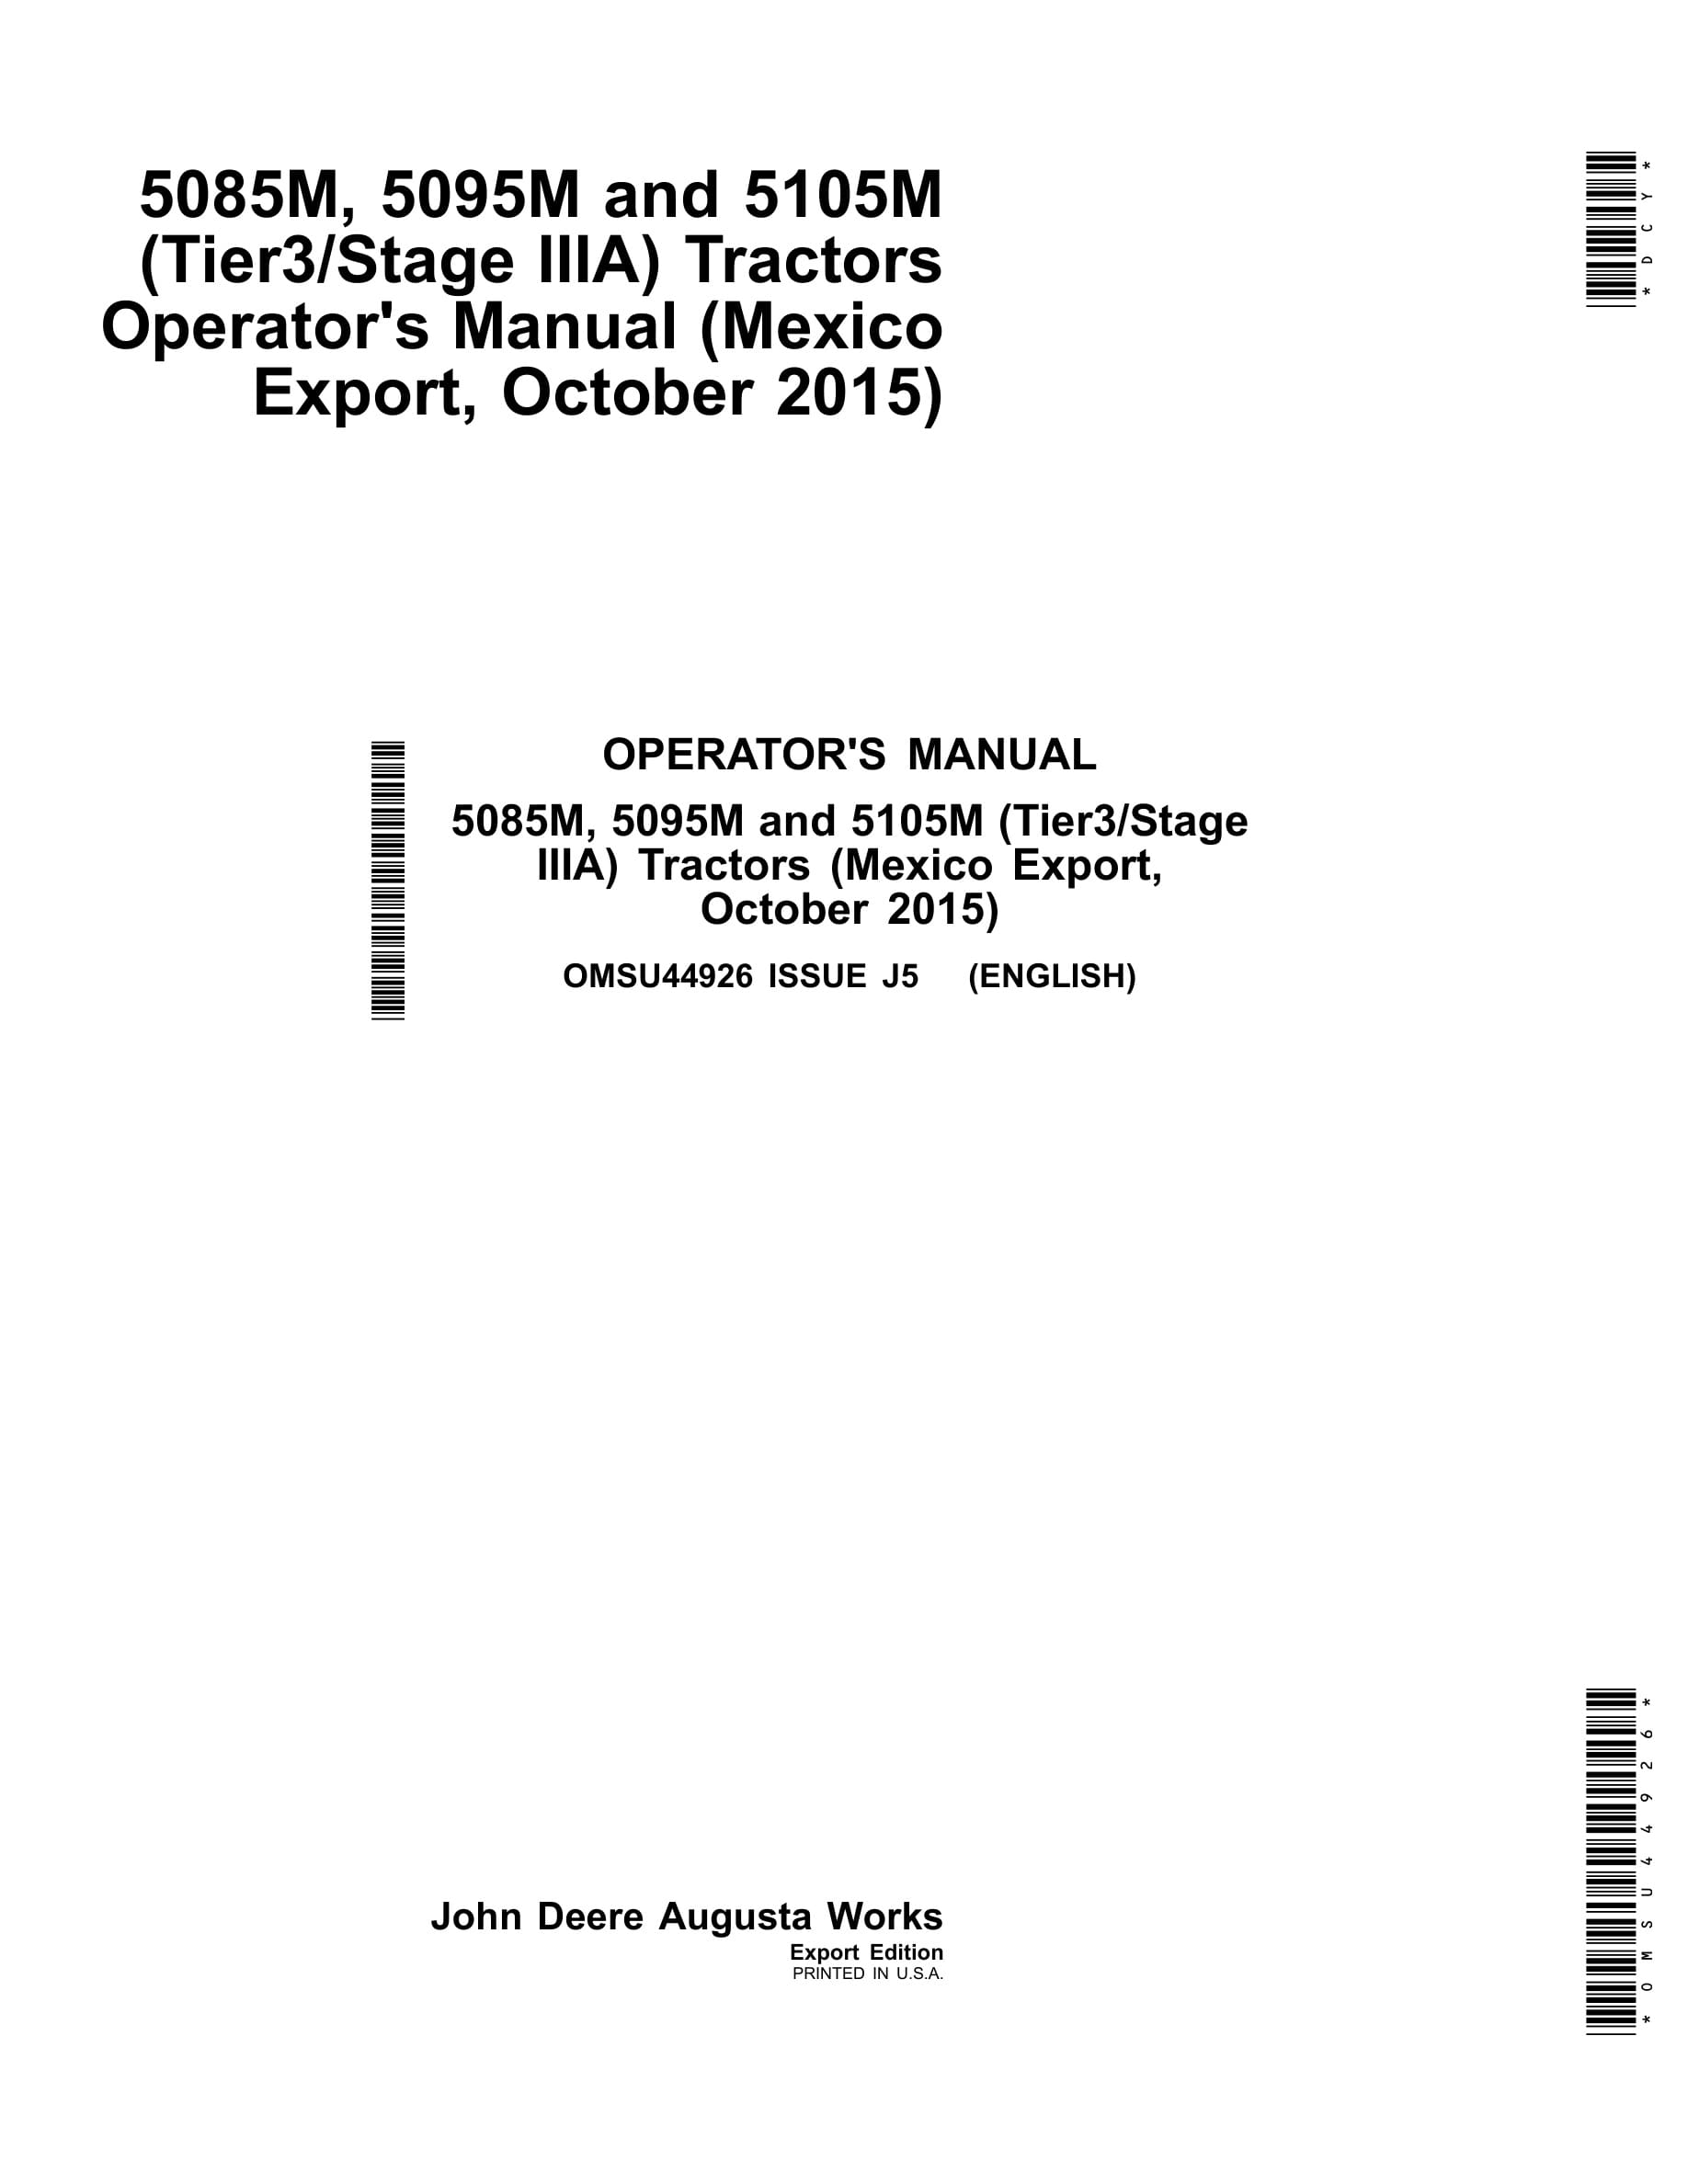 John Deere 5085m, 5095m And 5105m (tier3 Stage Iiia) Tractors Operator Manuals OMSU44926-1